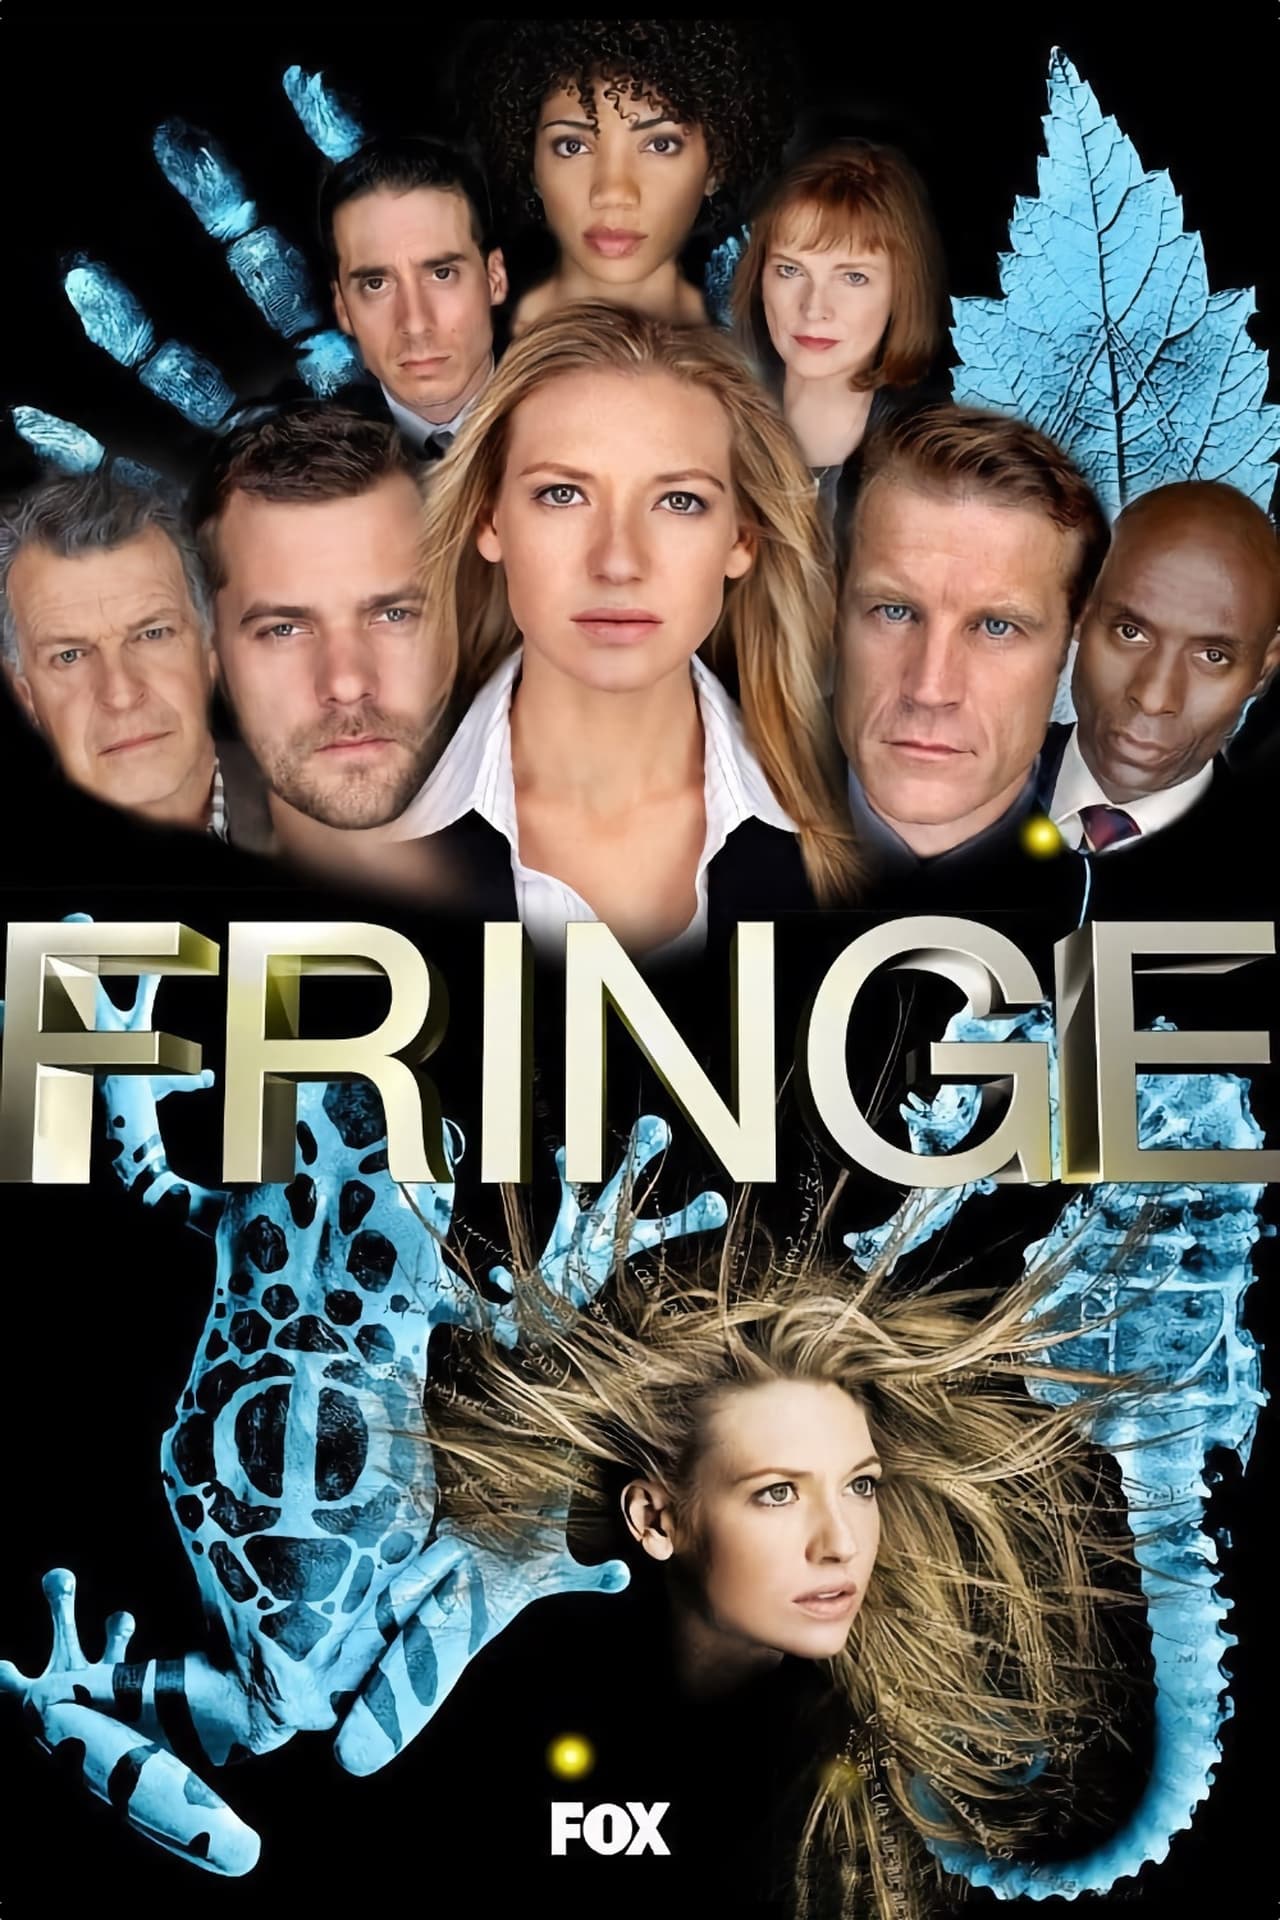 Fringe (2011) S4 EP01&EP22 192Kbps 23.976Fps 48Khz 2.0Ch DigitalTV Turkish Audio TAC